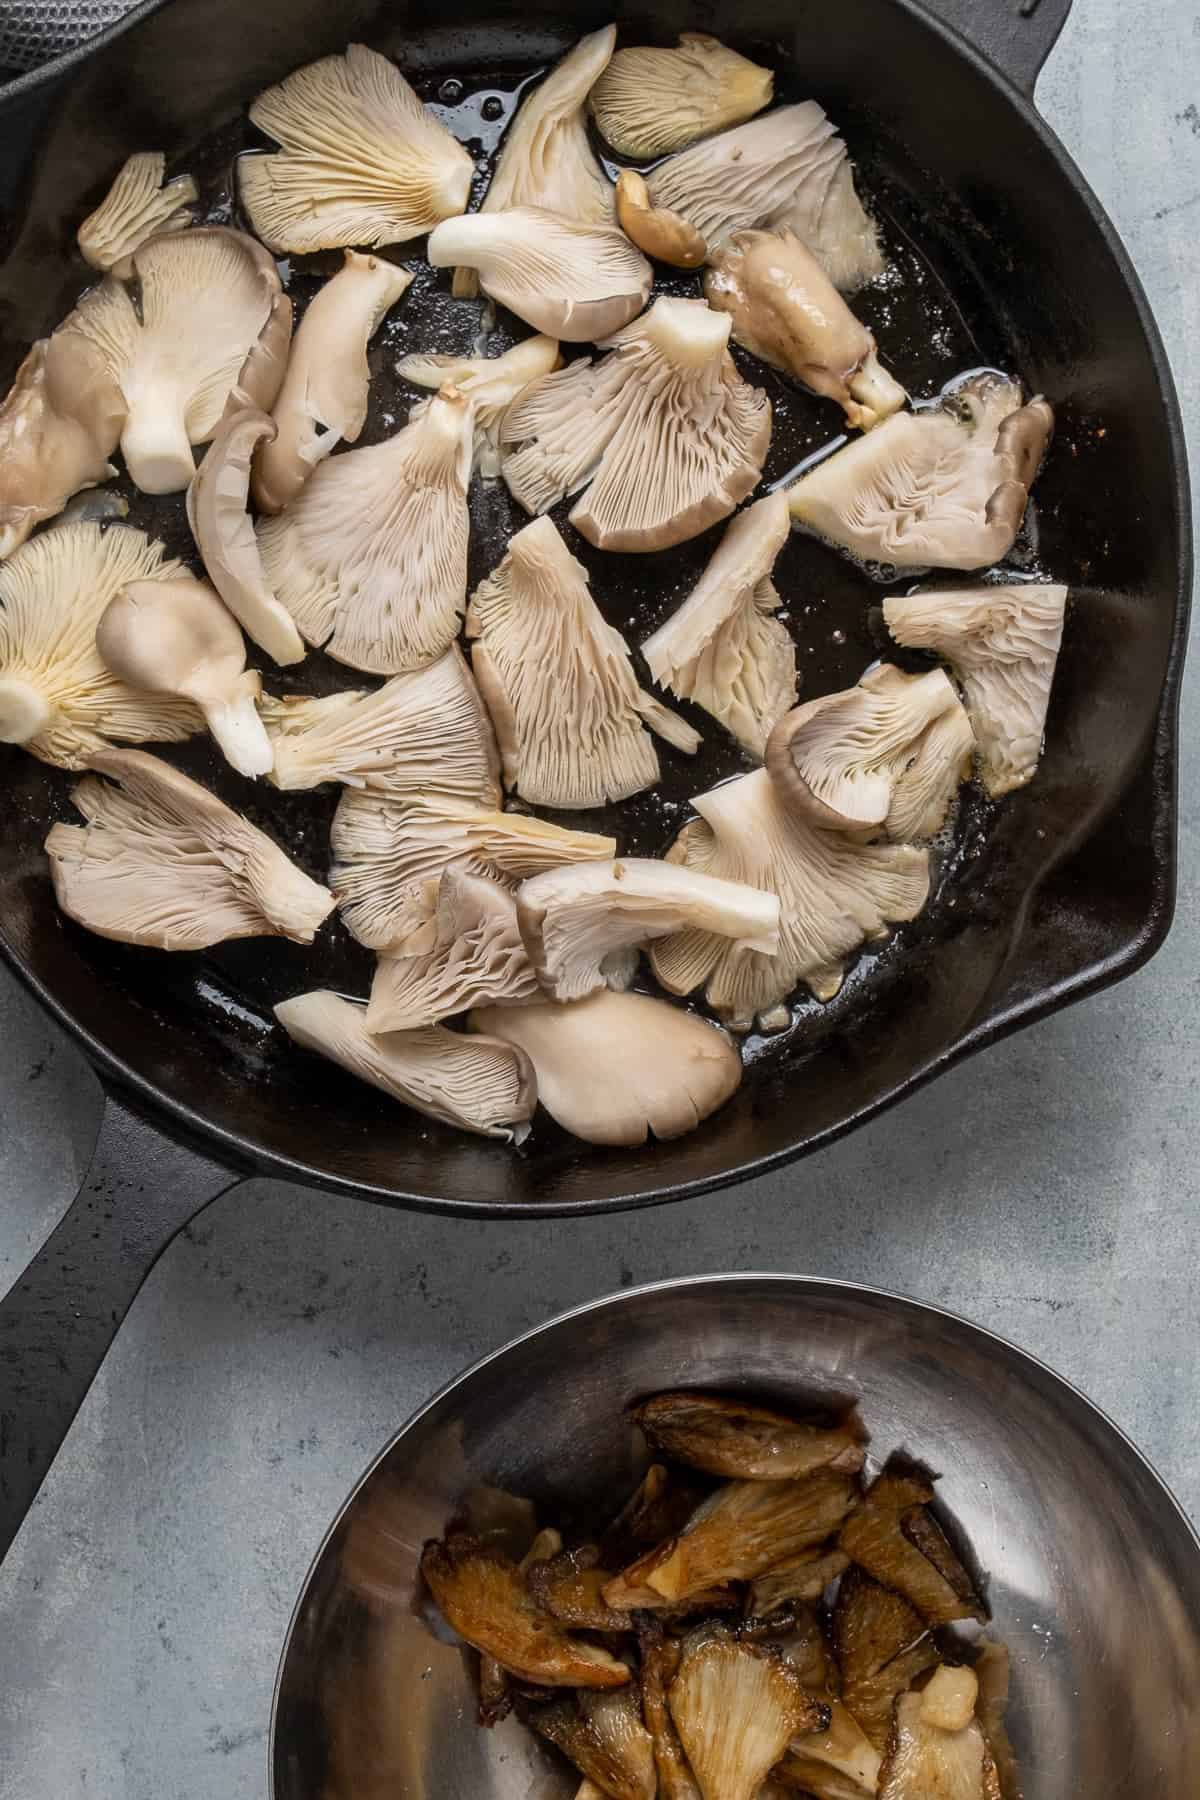 在铸铁煎锅里煎的平菇和一些煎过的平菇放在旁边的碗里。